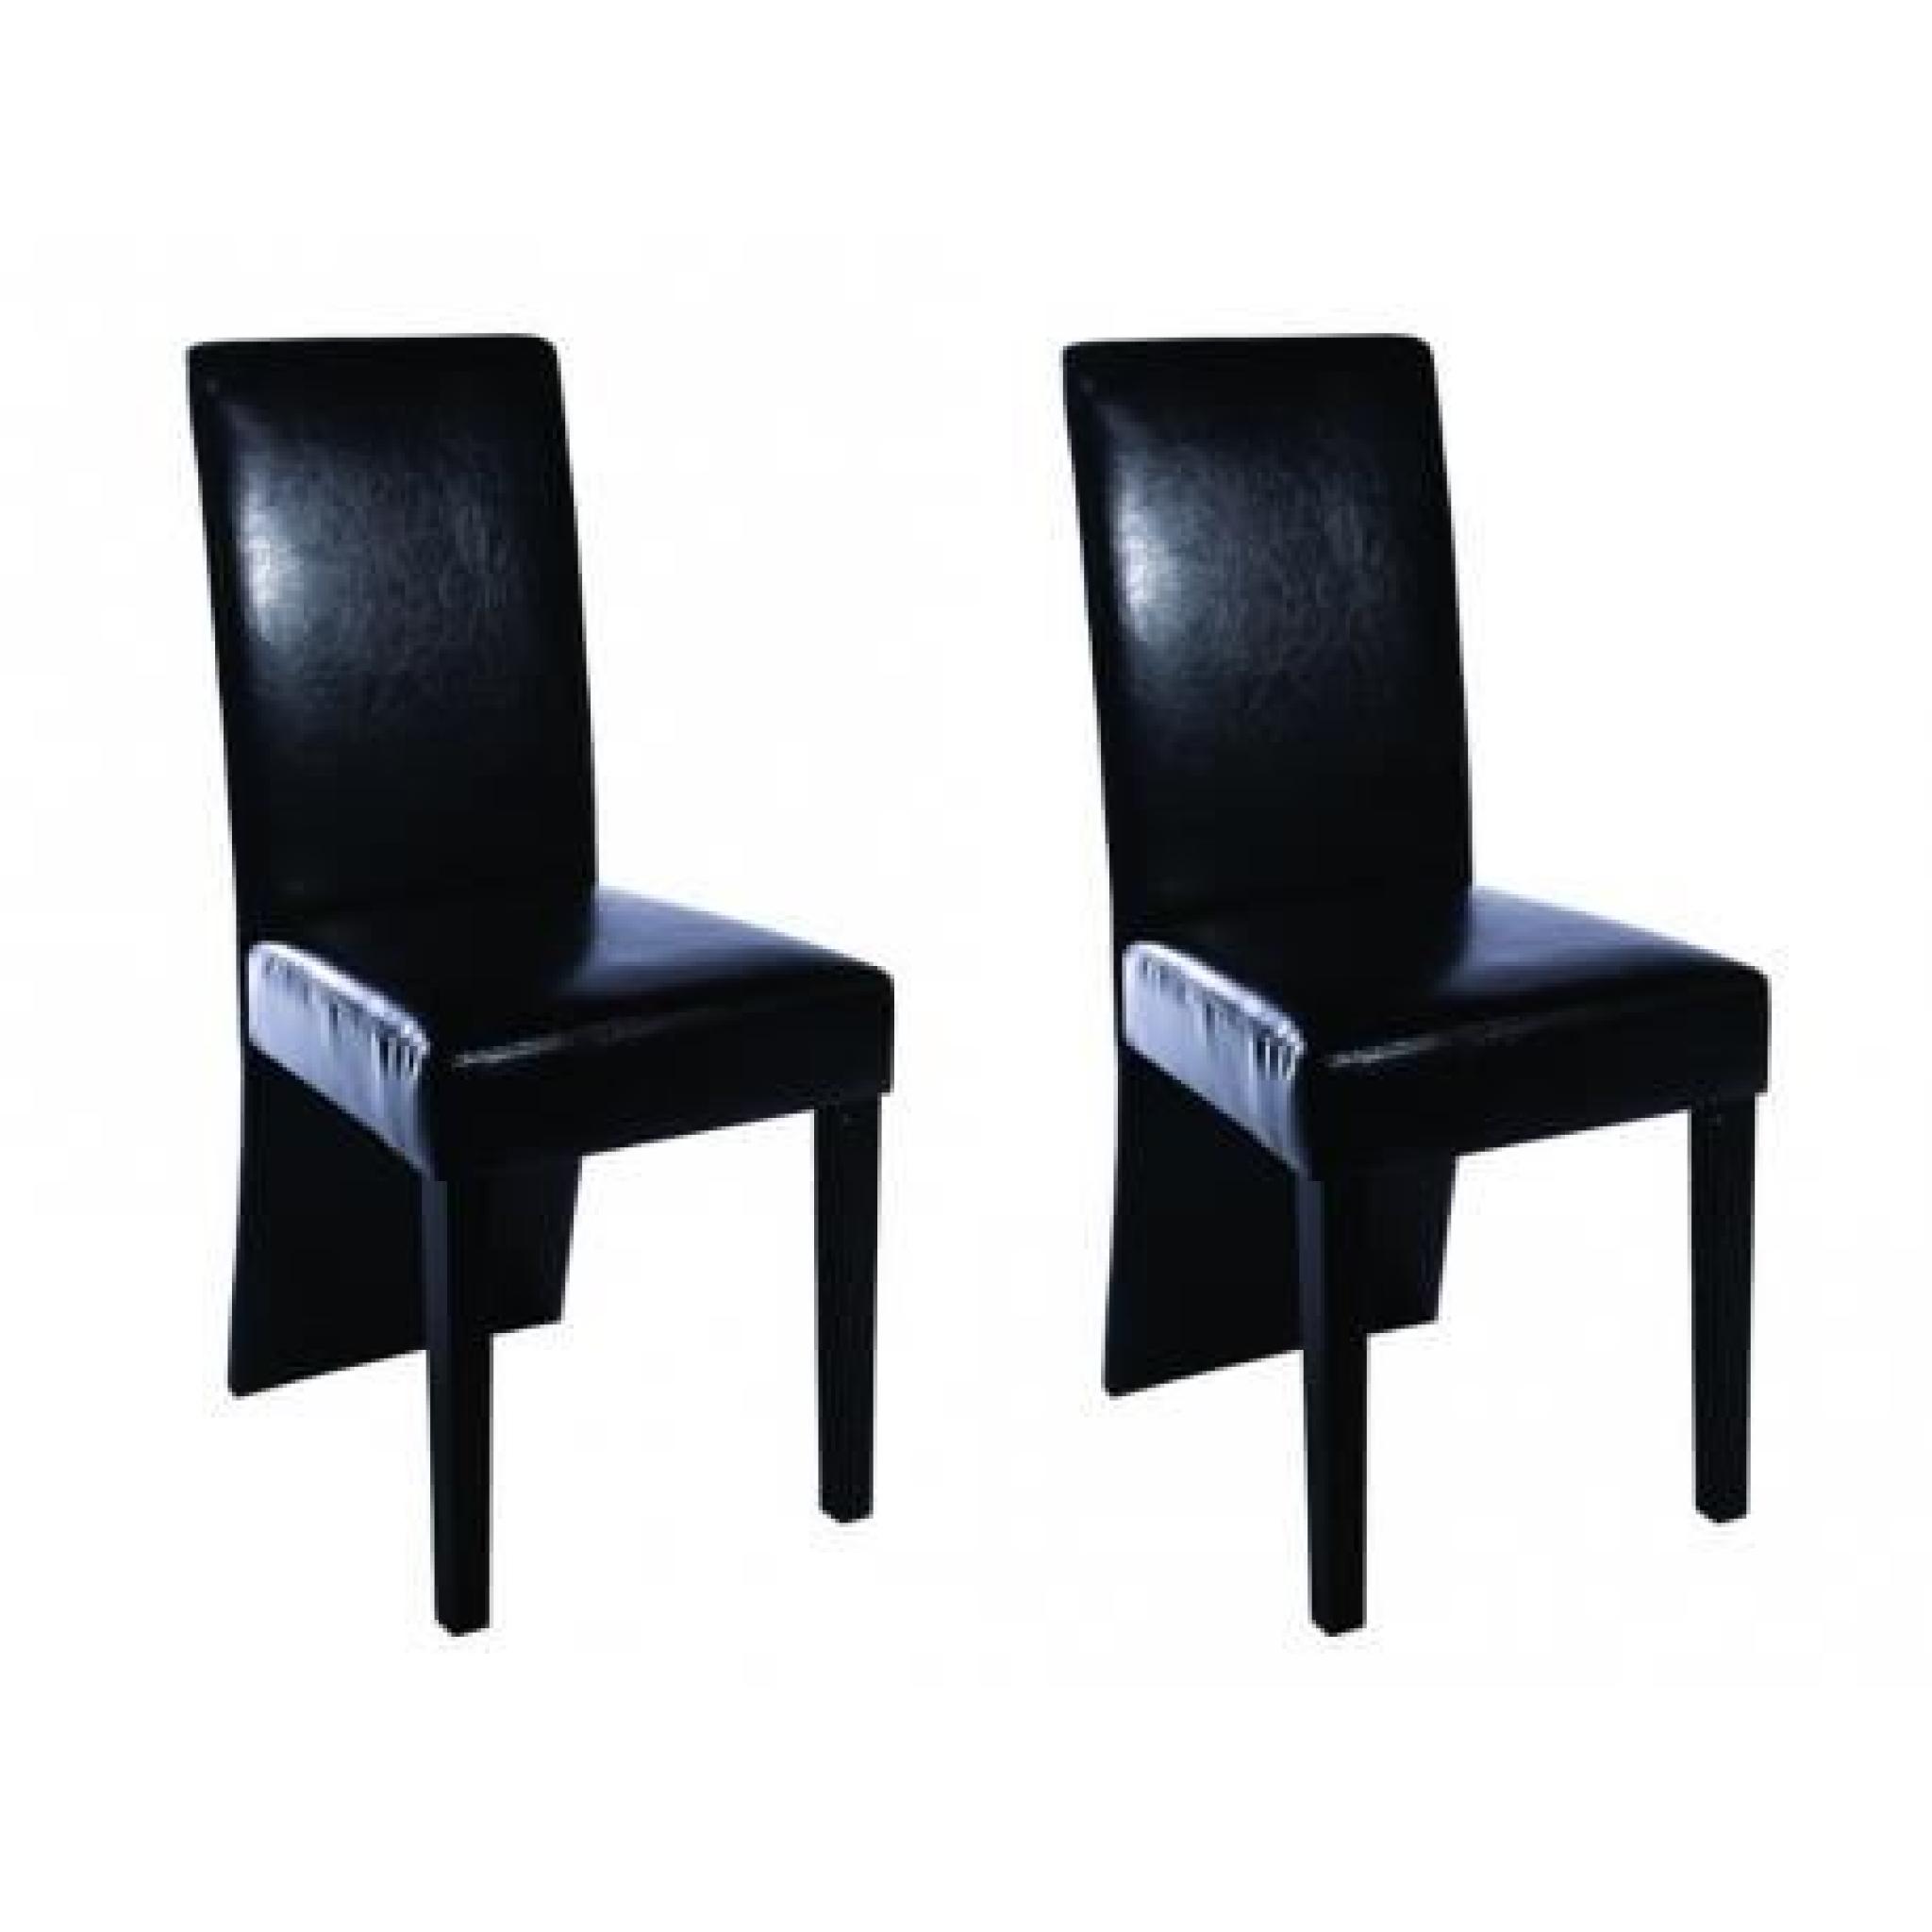 Chaise design bois noir (lot de 2) Stylashop